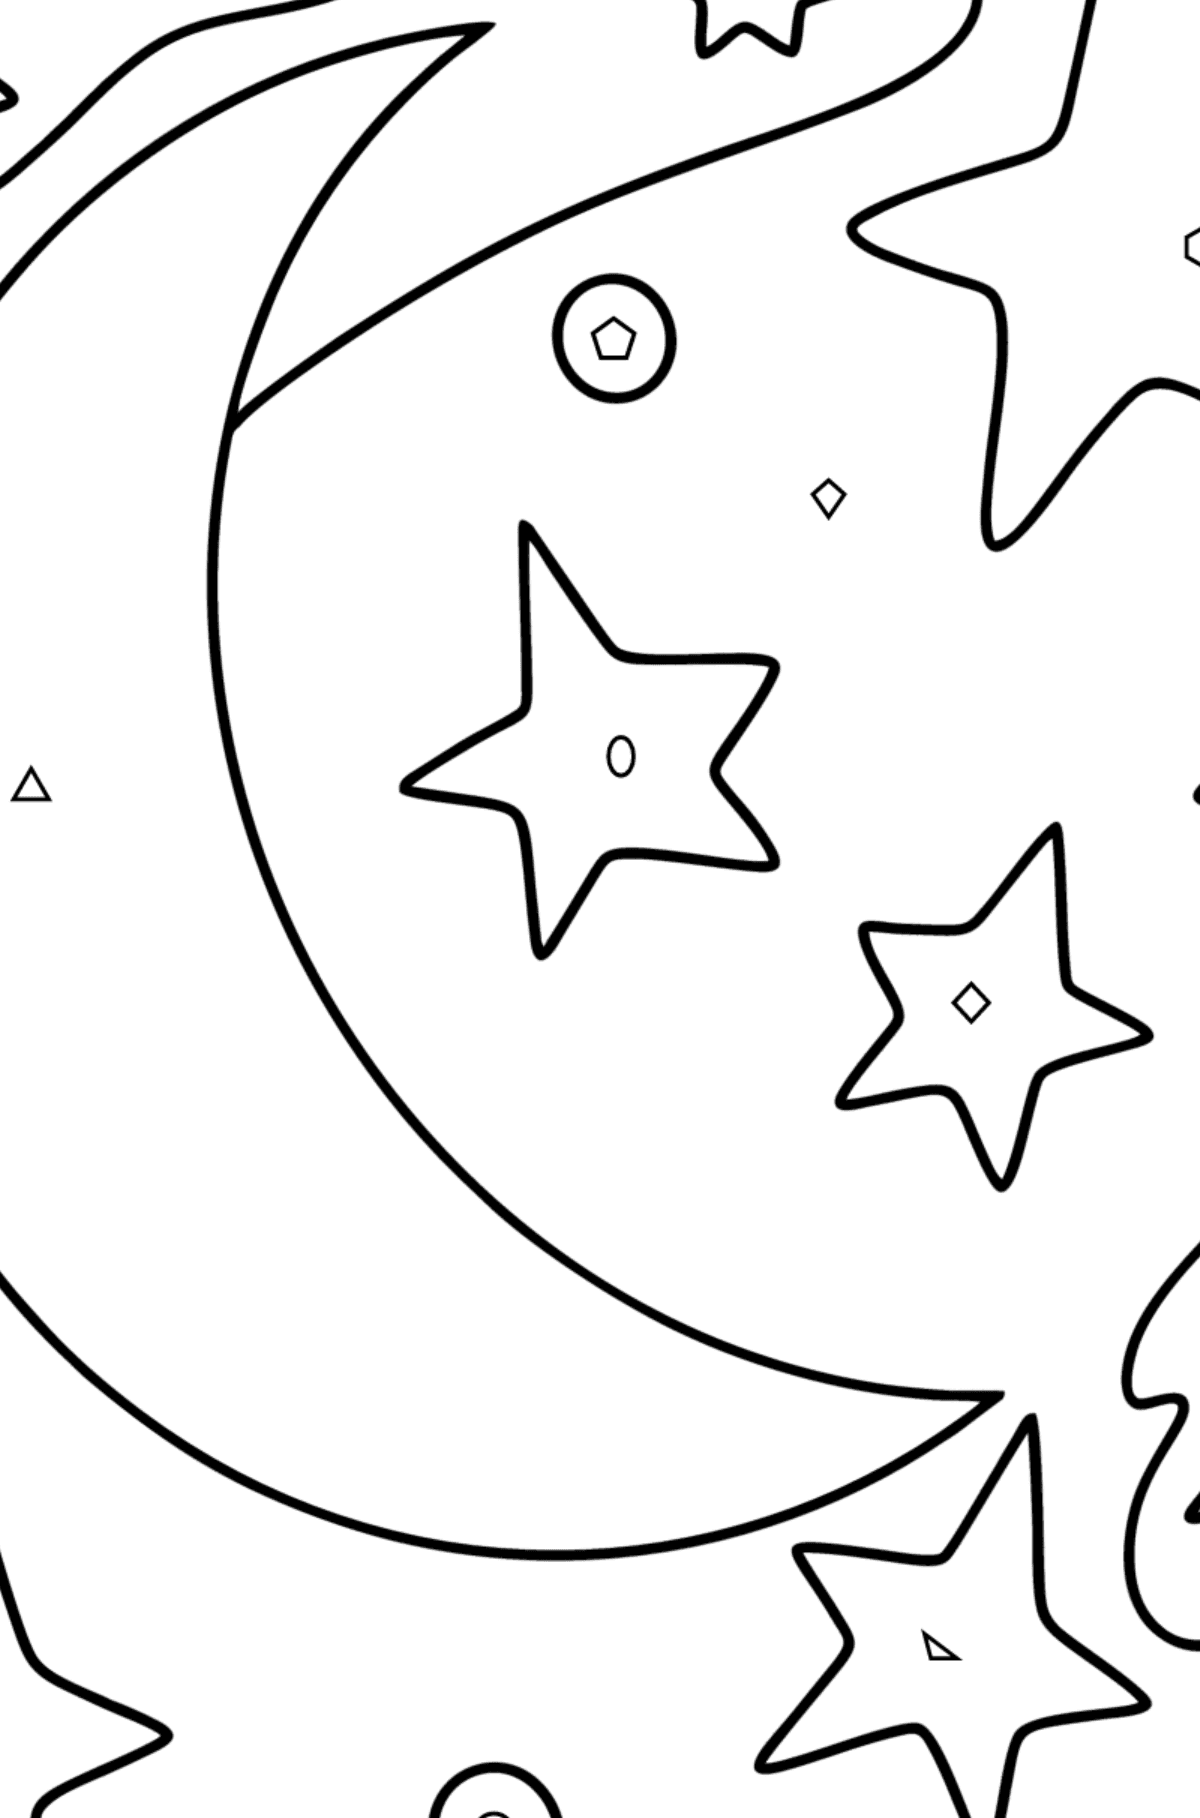 Månen og stjernene tegning til fargelegging - Fargelegge etter geometriske former for barn